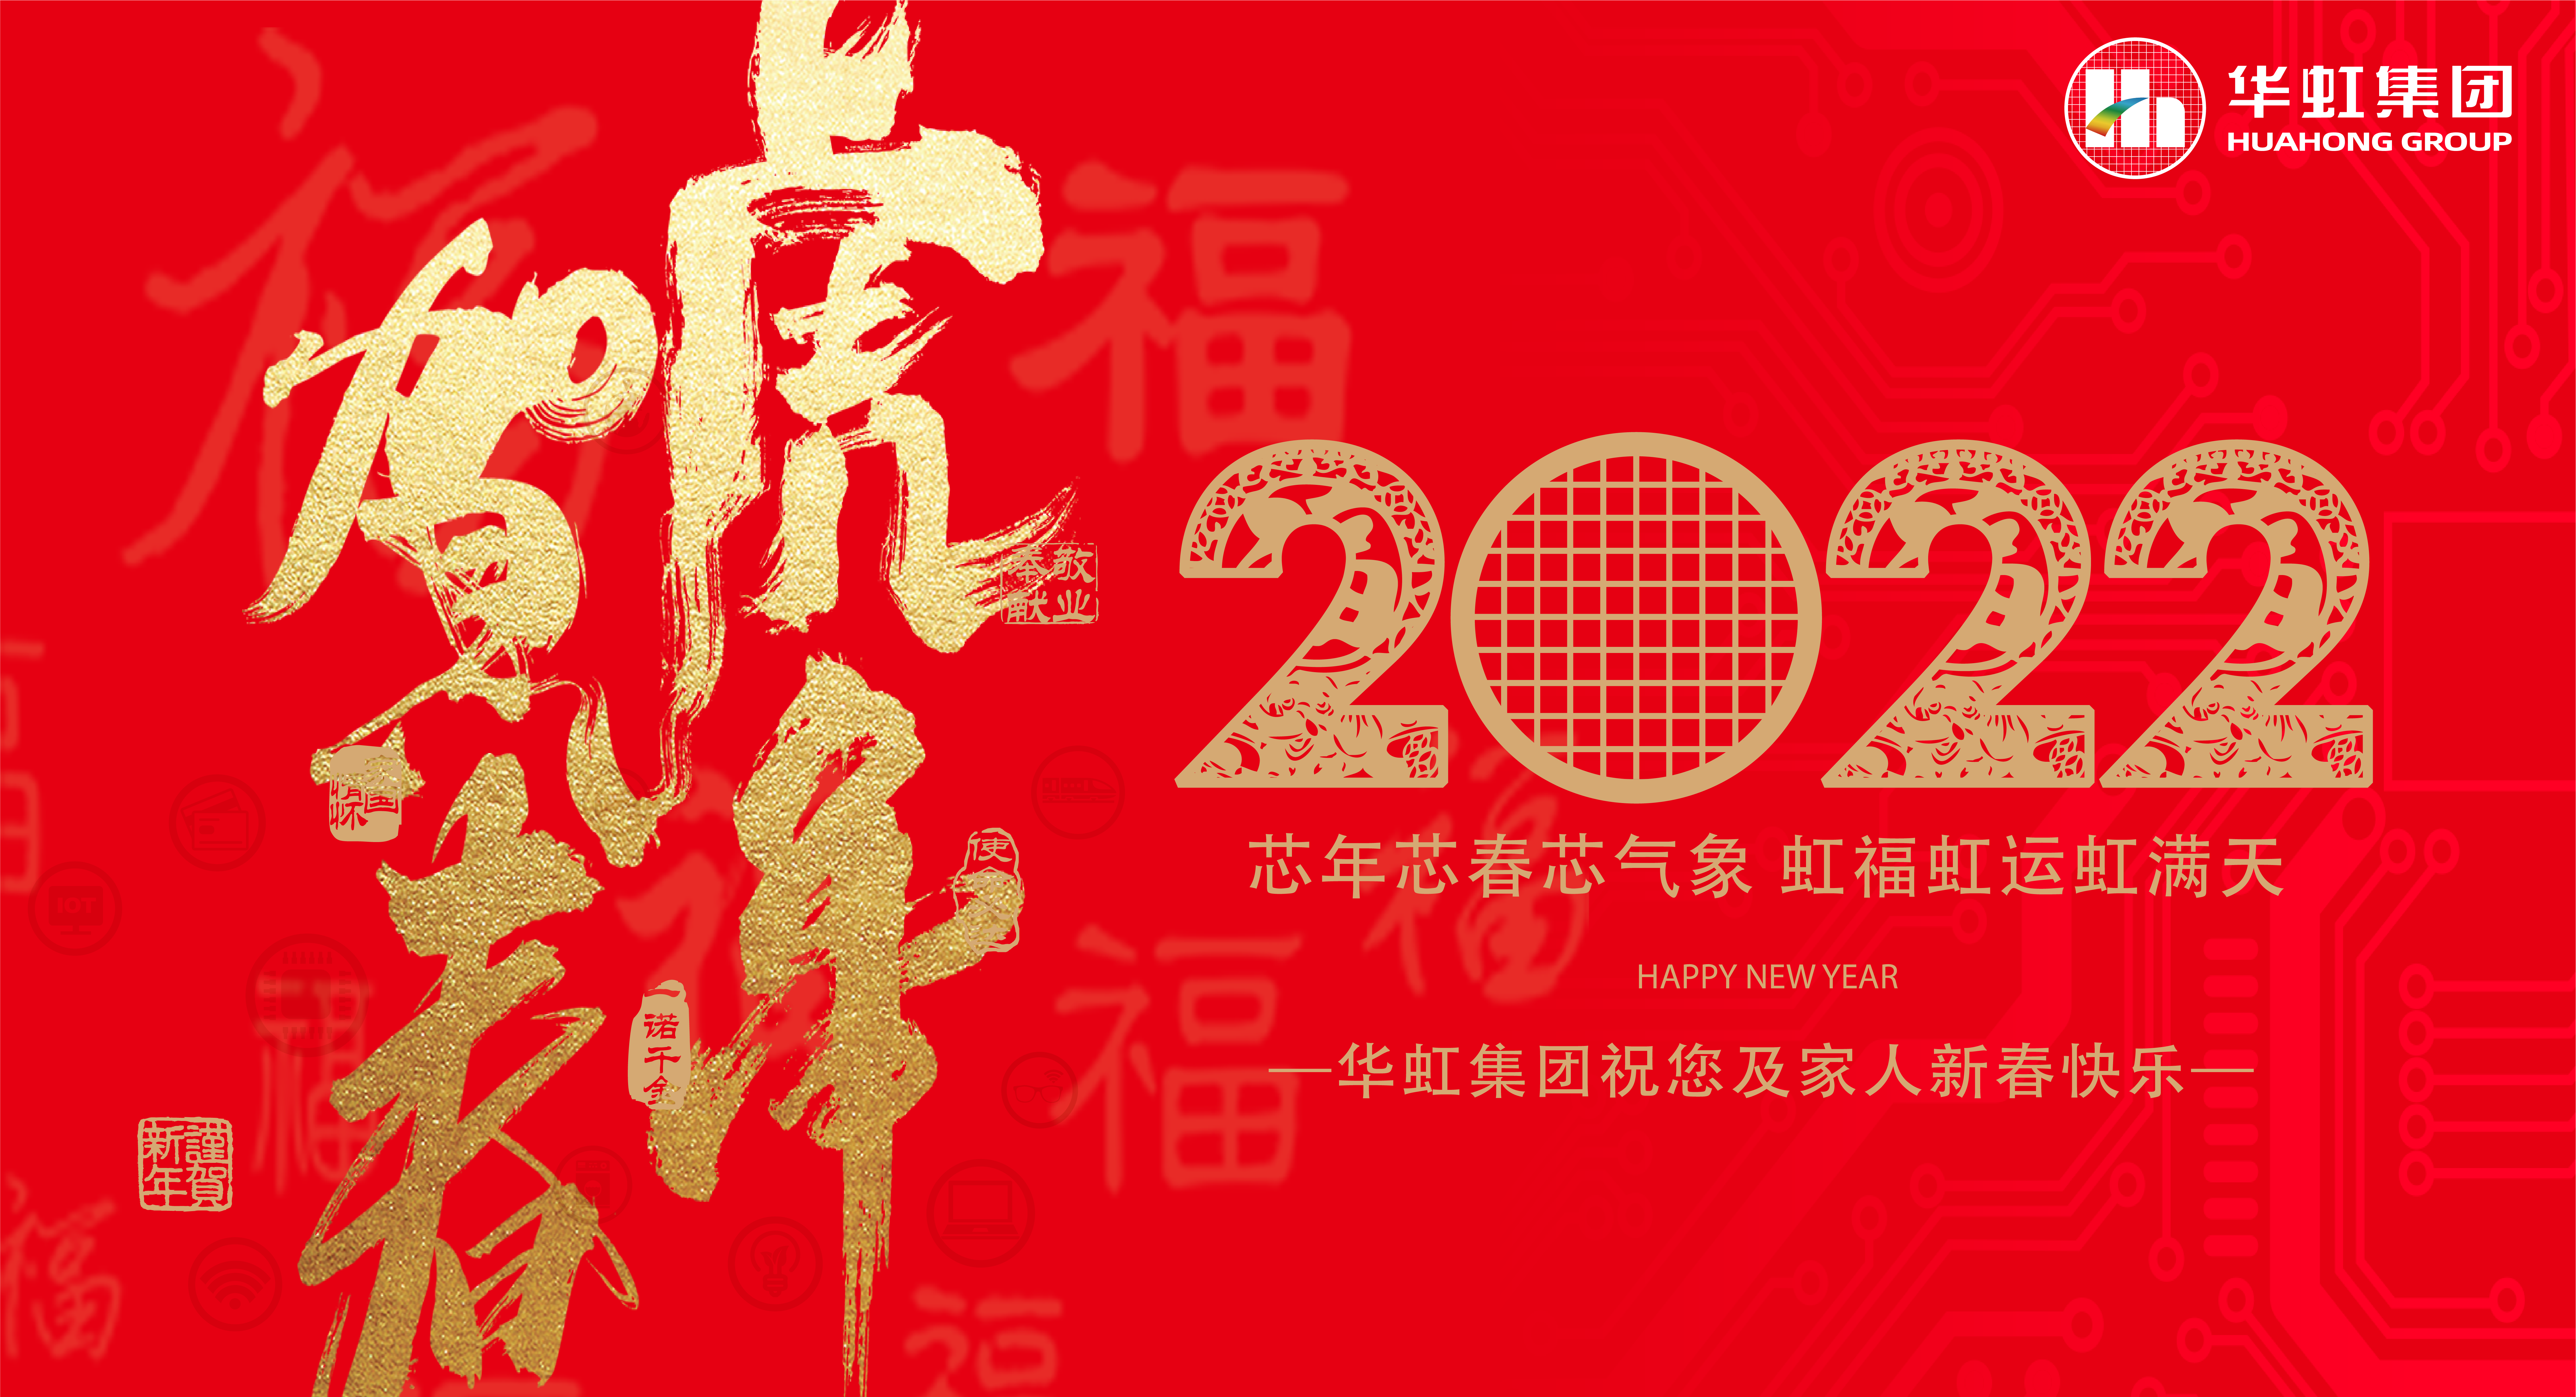 沙巴在线(中国)有限公司官网祝您及家人新春快乐